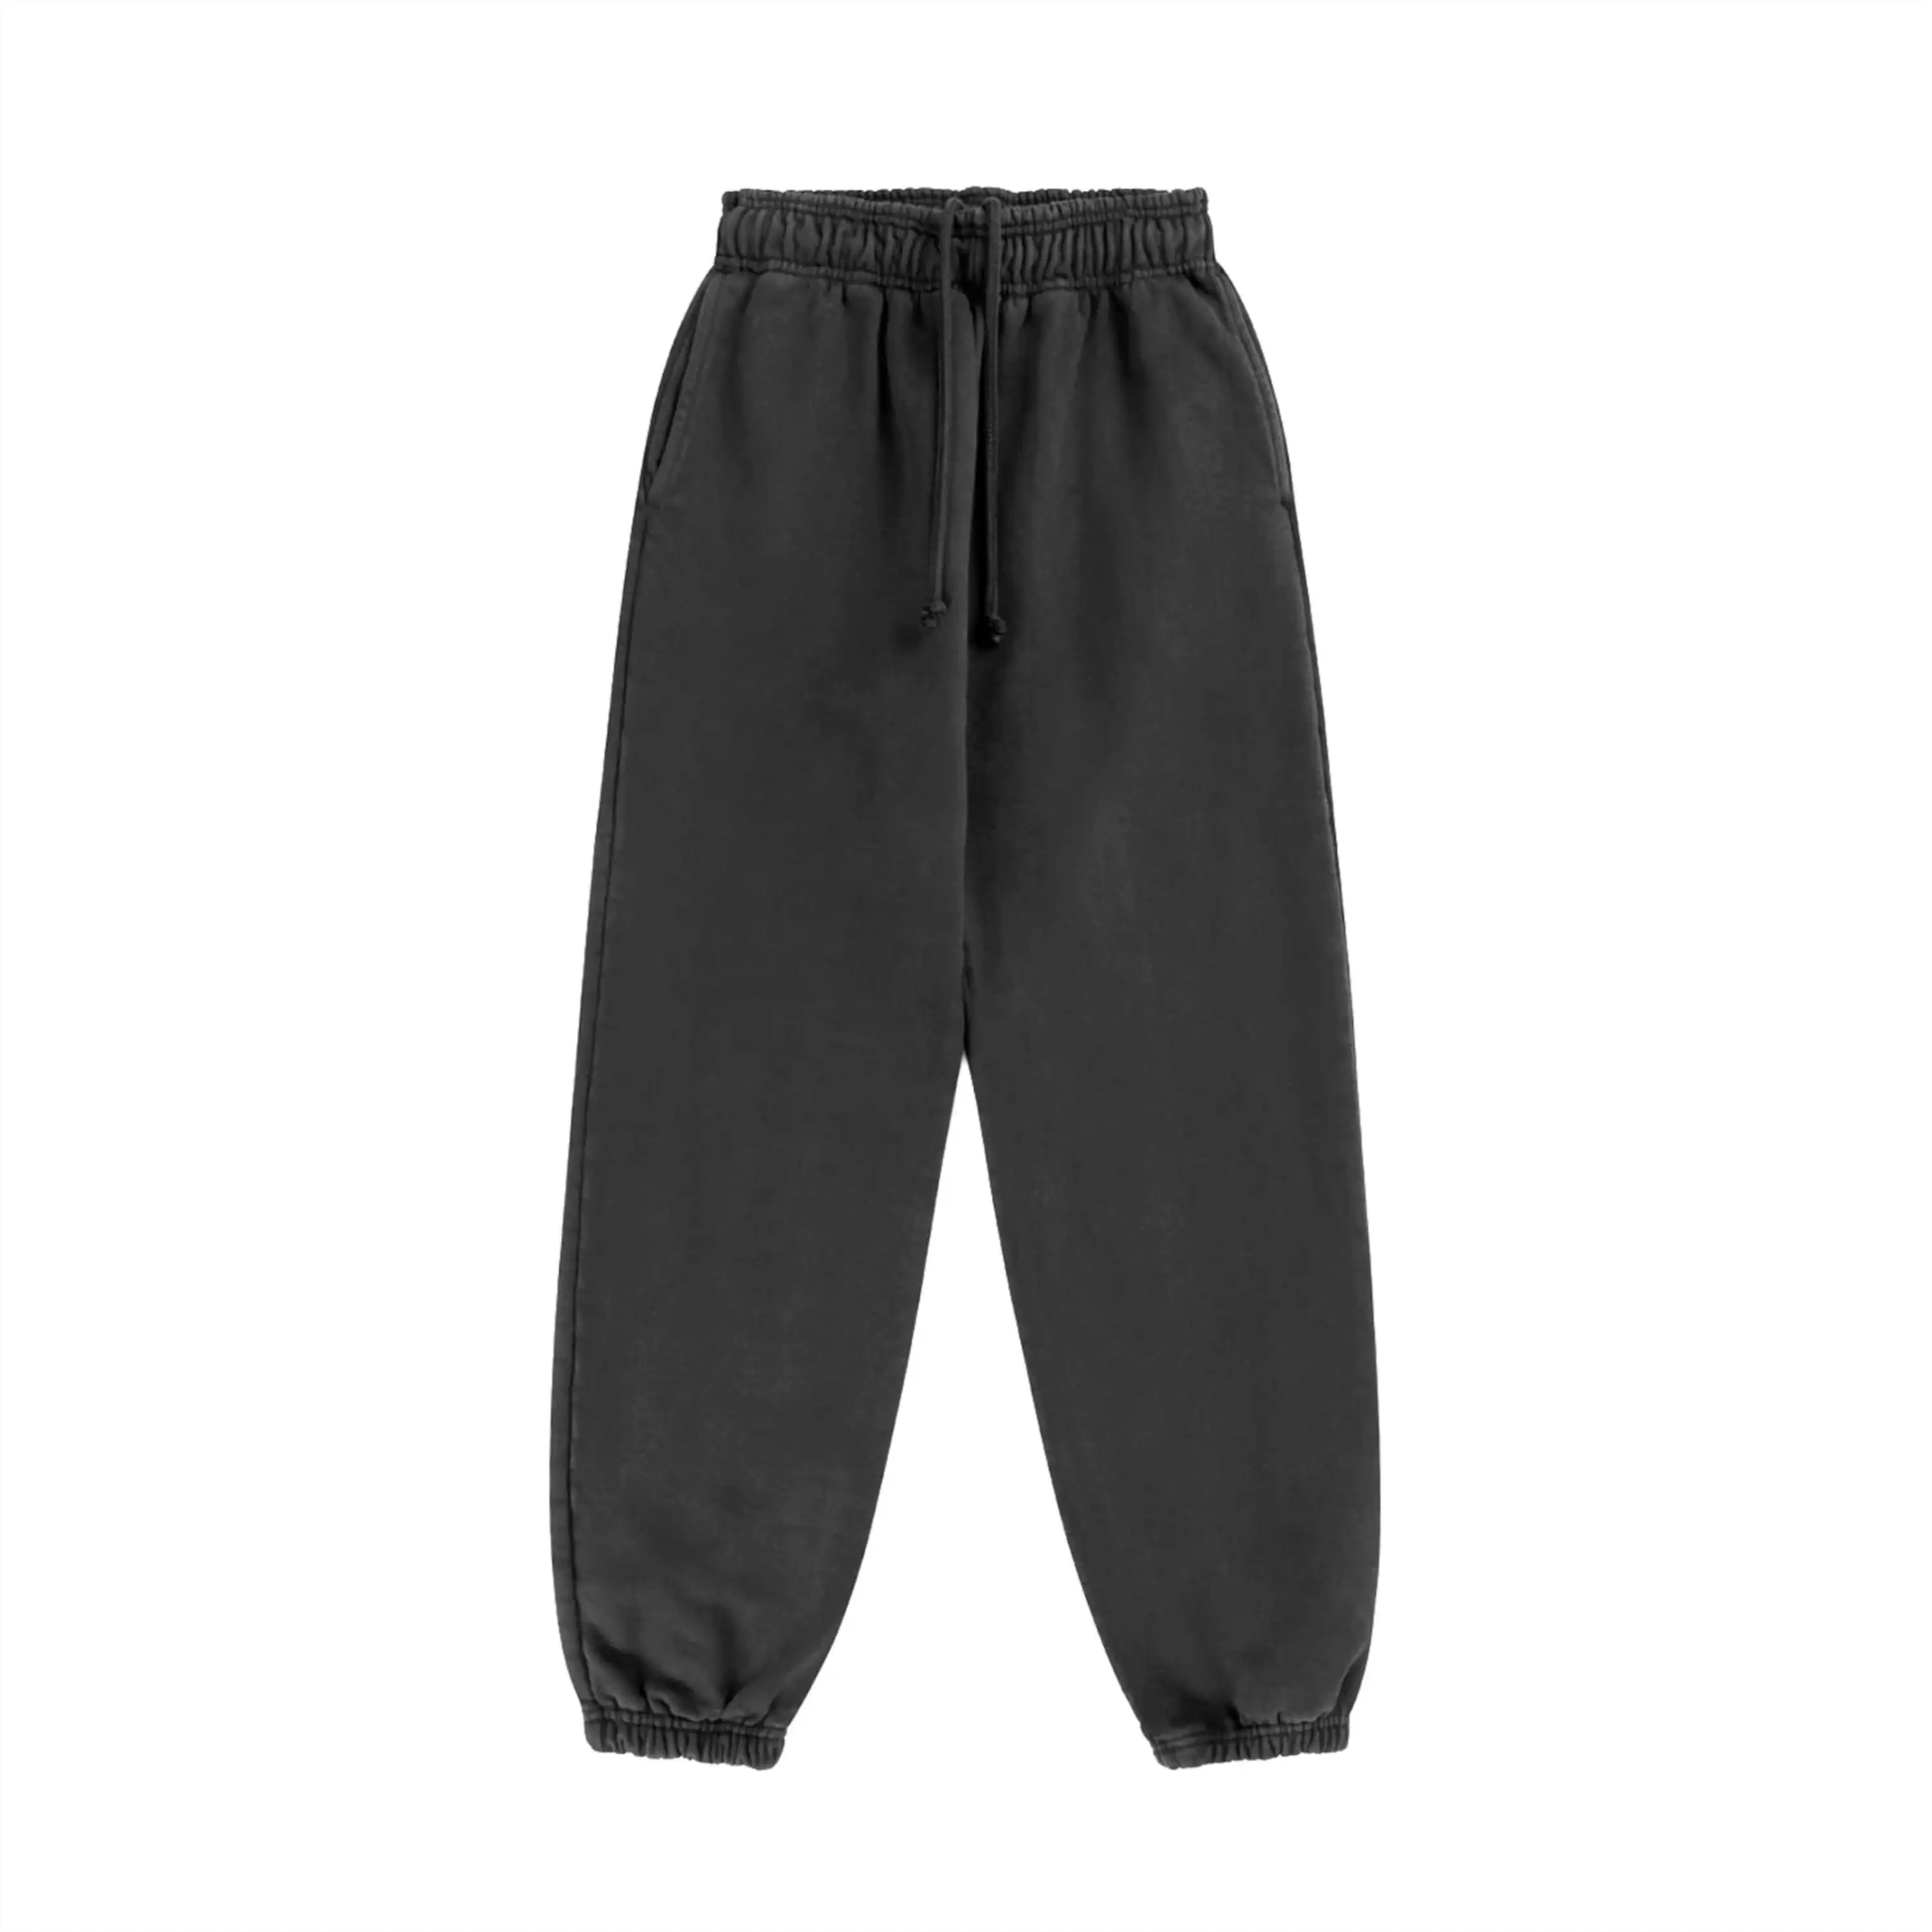 Winter Zip Pockets Thicken Fleece Sweatpants Men Joggers Black Grey Down Cotton Warm Pants Male WaterProof Thermal Trousers